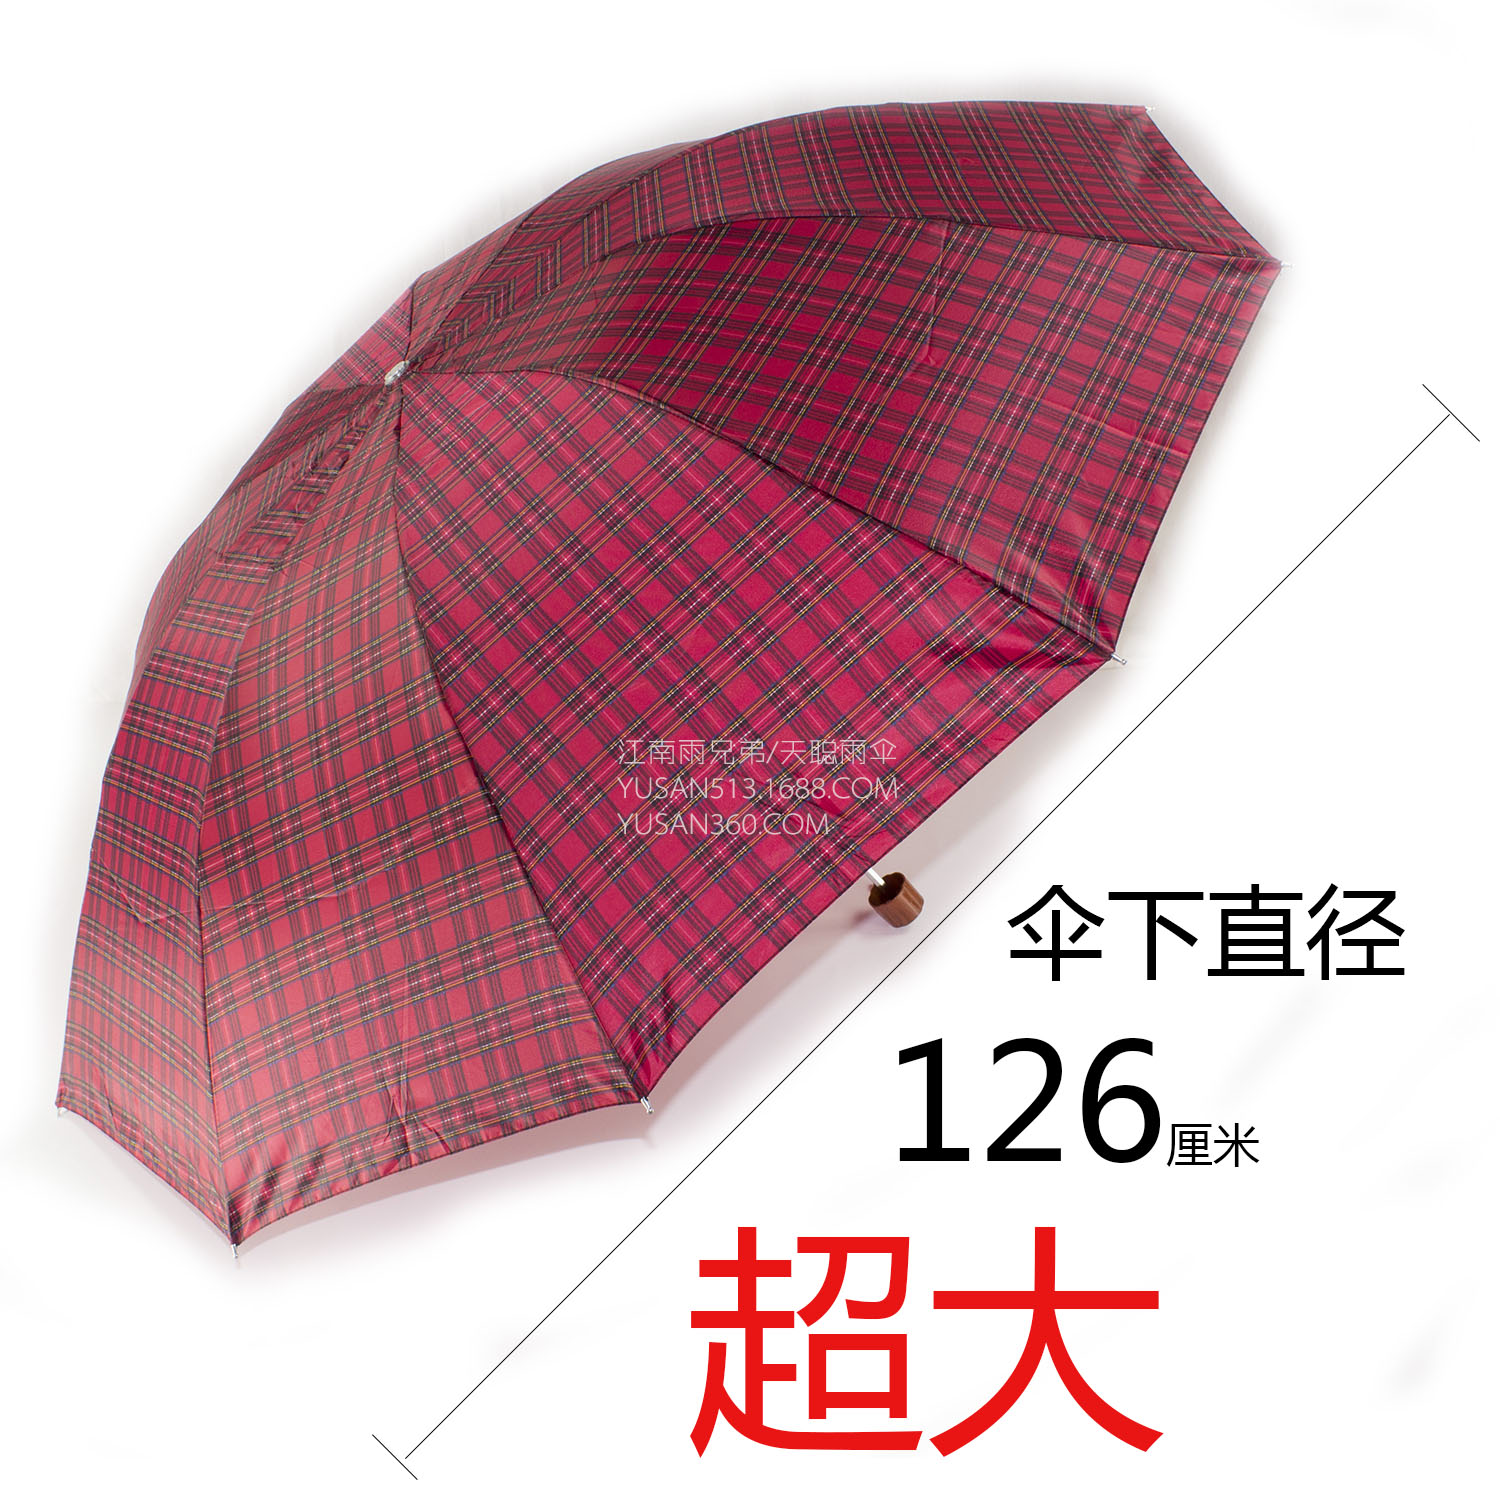 10骨折叠超大晴雨伞特大加固伞直径126厘米 3人用  男士商务格子